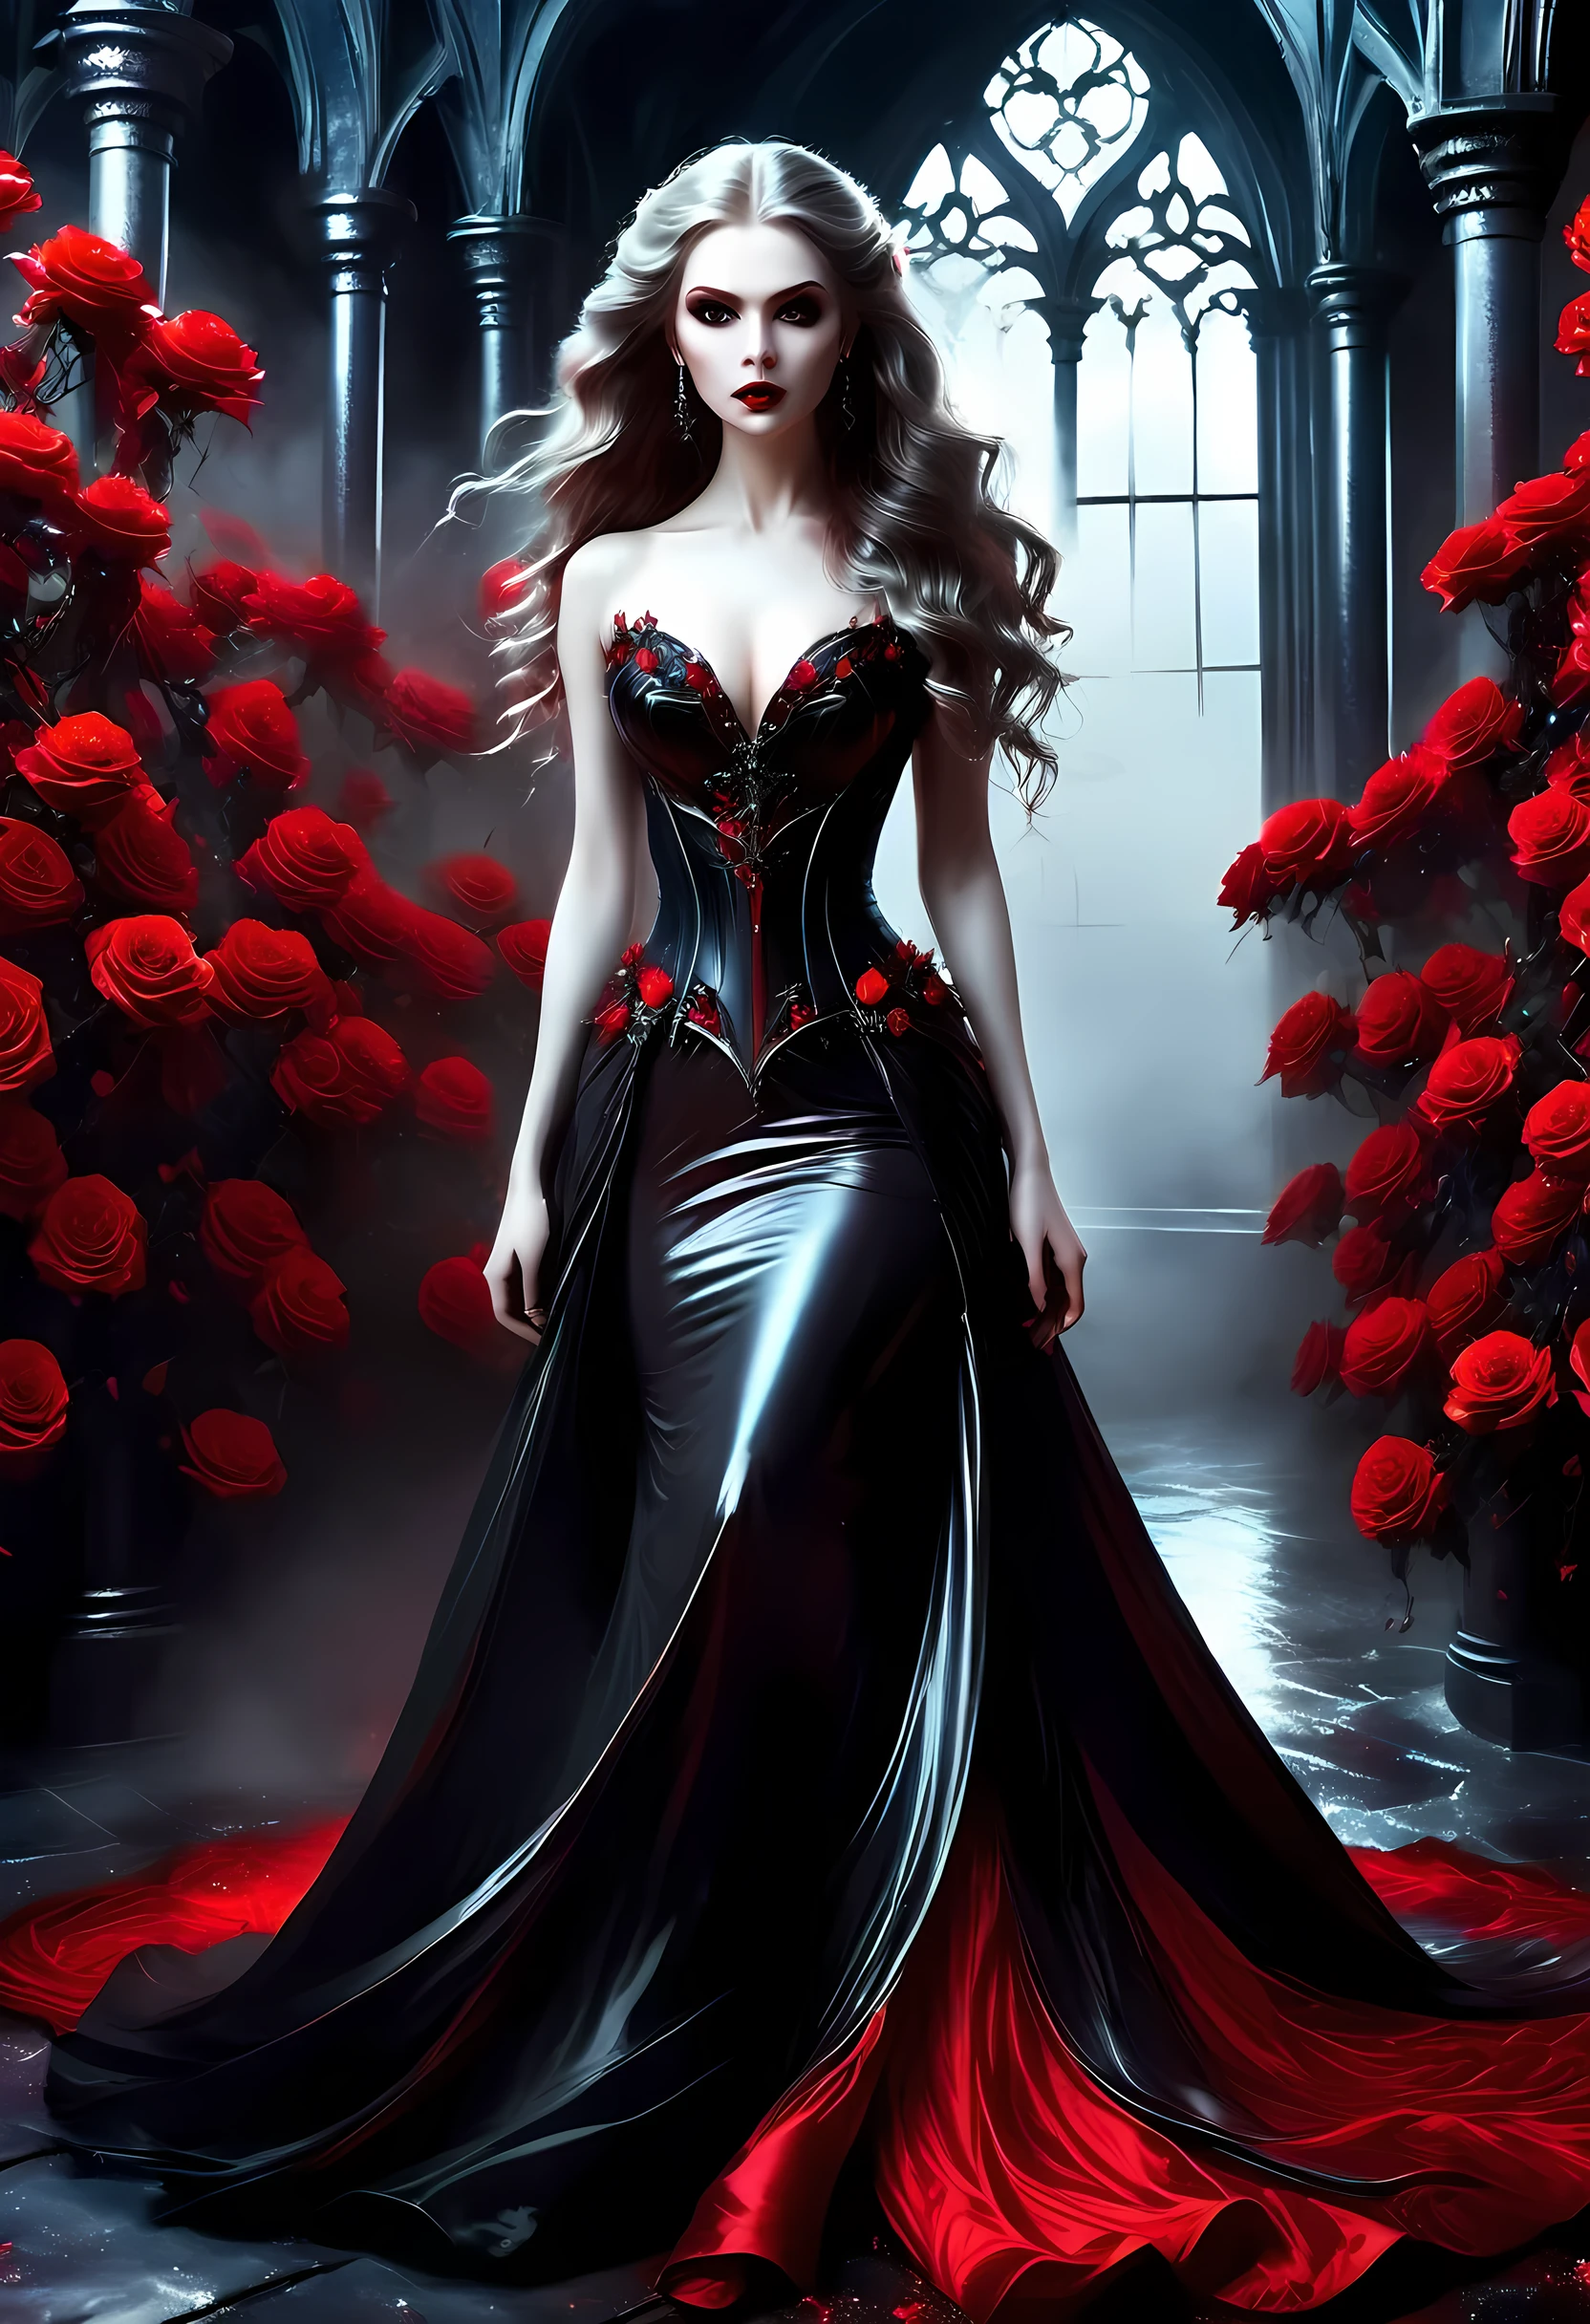 Dark 幻想藝術, 幻想藝術, 歌德藝術,  女吸血鬼的照片, 精緻的美麗, 全身照, 黑暗魅力拍攝,  蒼白的皮膚, 深金色頭髮, 長髮, 捲髮, (冰灰色: 1.3) 眼睛,  她穿著 (紅色的: 1.3) 裙子, Armo紅色的Dress, 纏繞著 (黑色的: 1.3)  玫瑰花, 高跟鞋, 黑暗的城堡門廊, 憤怒星雲